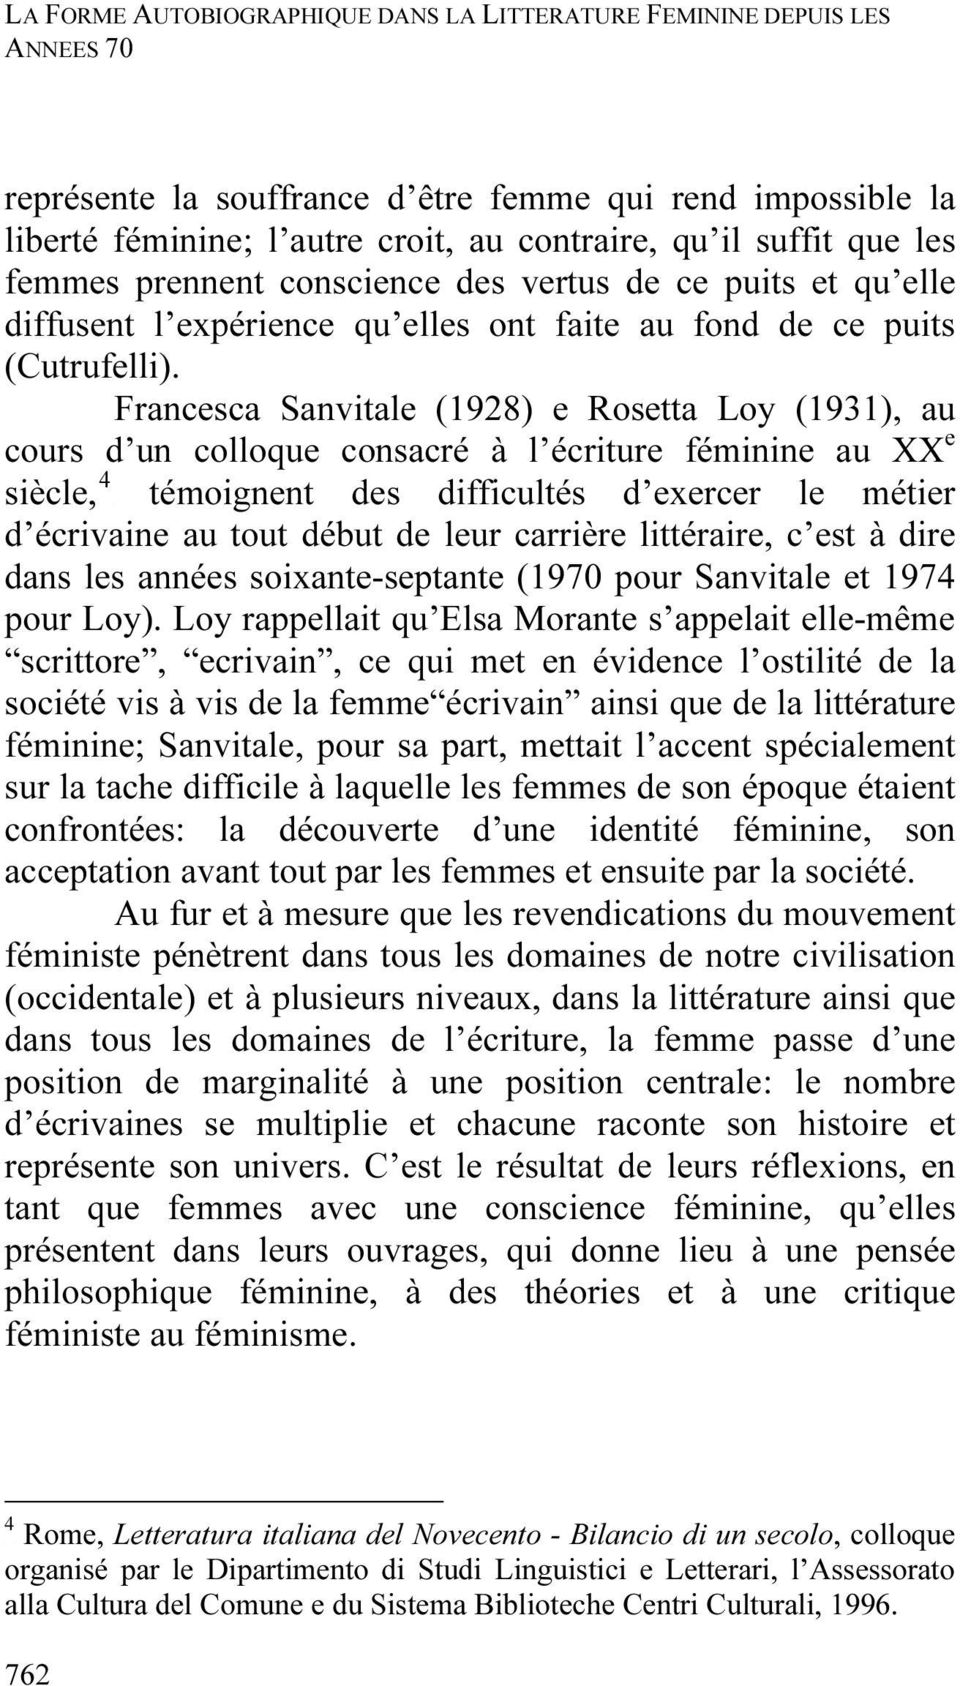 Francesca Sanvitale (1928) e Rosetta Loy (1931), au e cours d un colloque consacré à l écriture féminine au XXP 4 siècle,tpf des difficultés d exercer le métier d écrivaine au tout début de leur